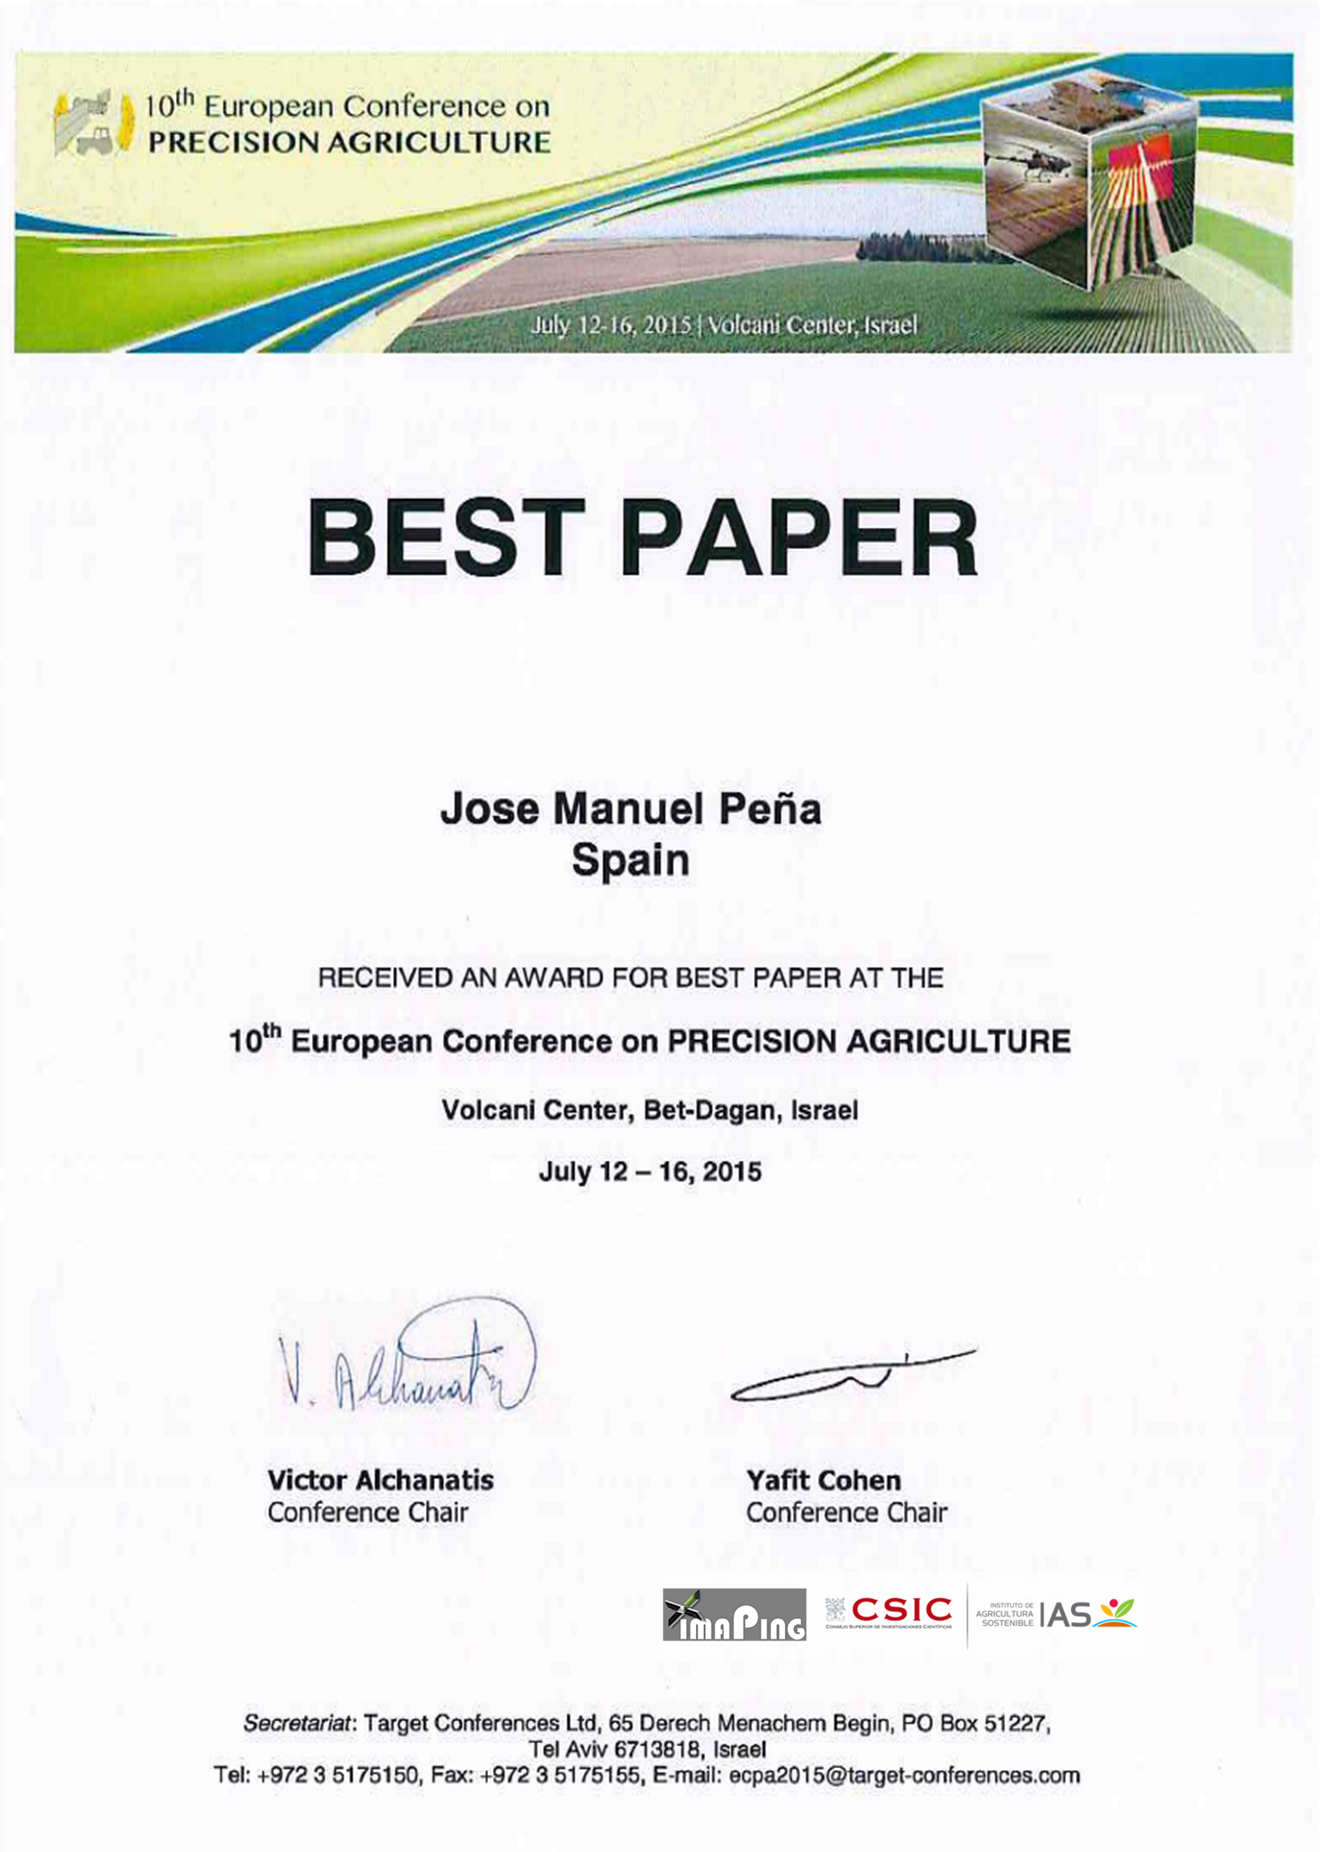 Certificado del premio recibido por grupo IMAPING en la 10ª Conferencia Europea sobre Agricultura de Precisión. Volcani Center, Israel.